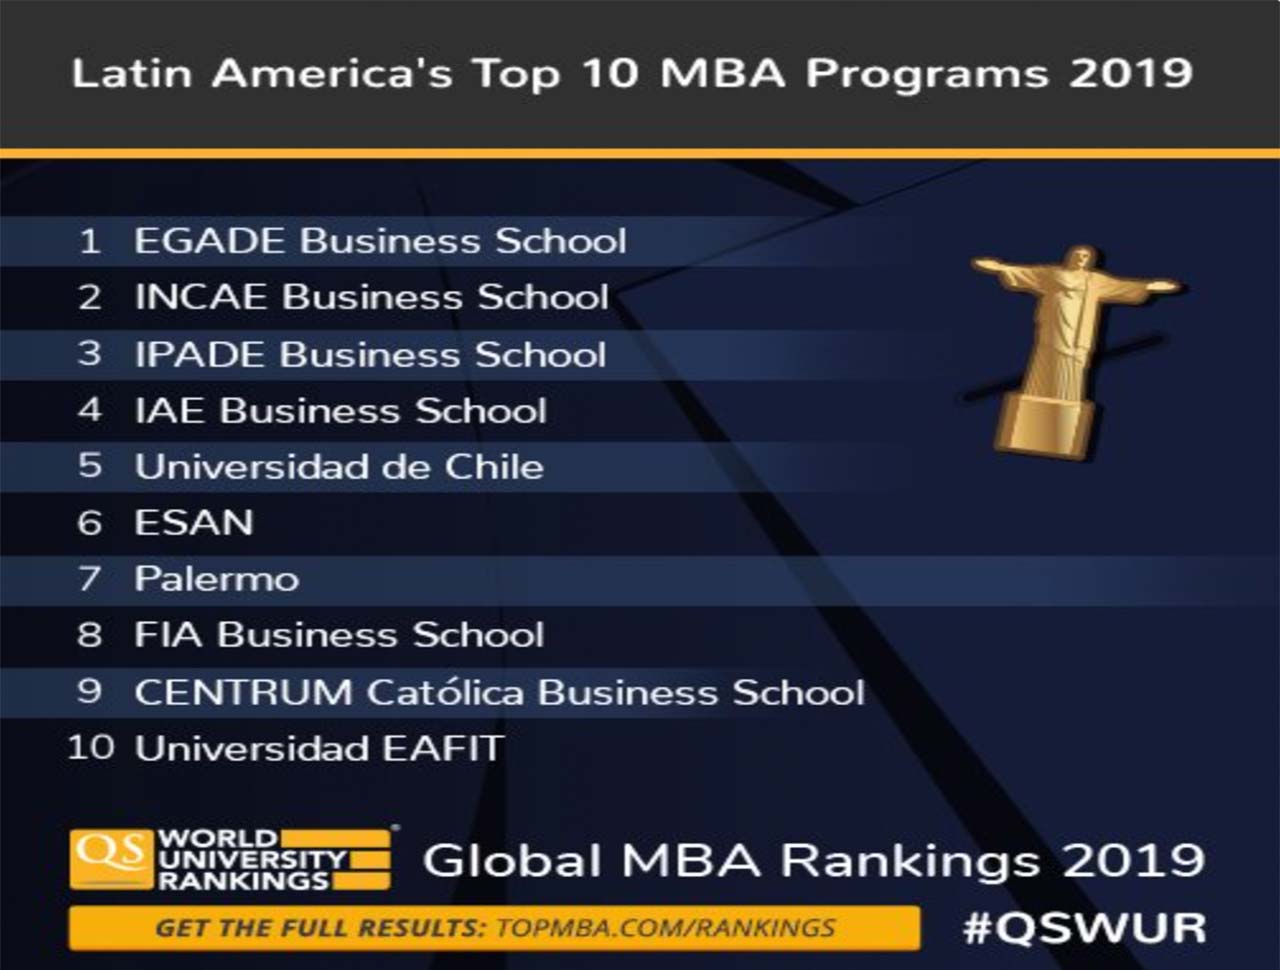 : EGADE Business School asciende en ranking global y lidera América Latina una vez más